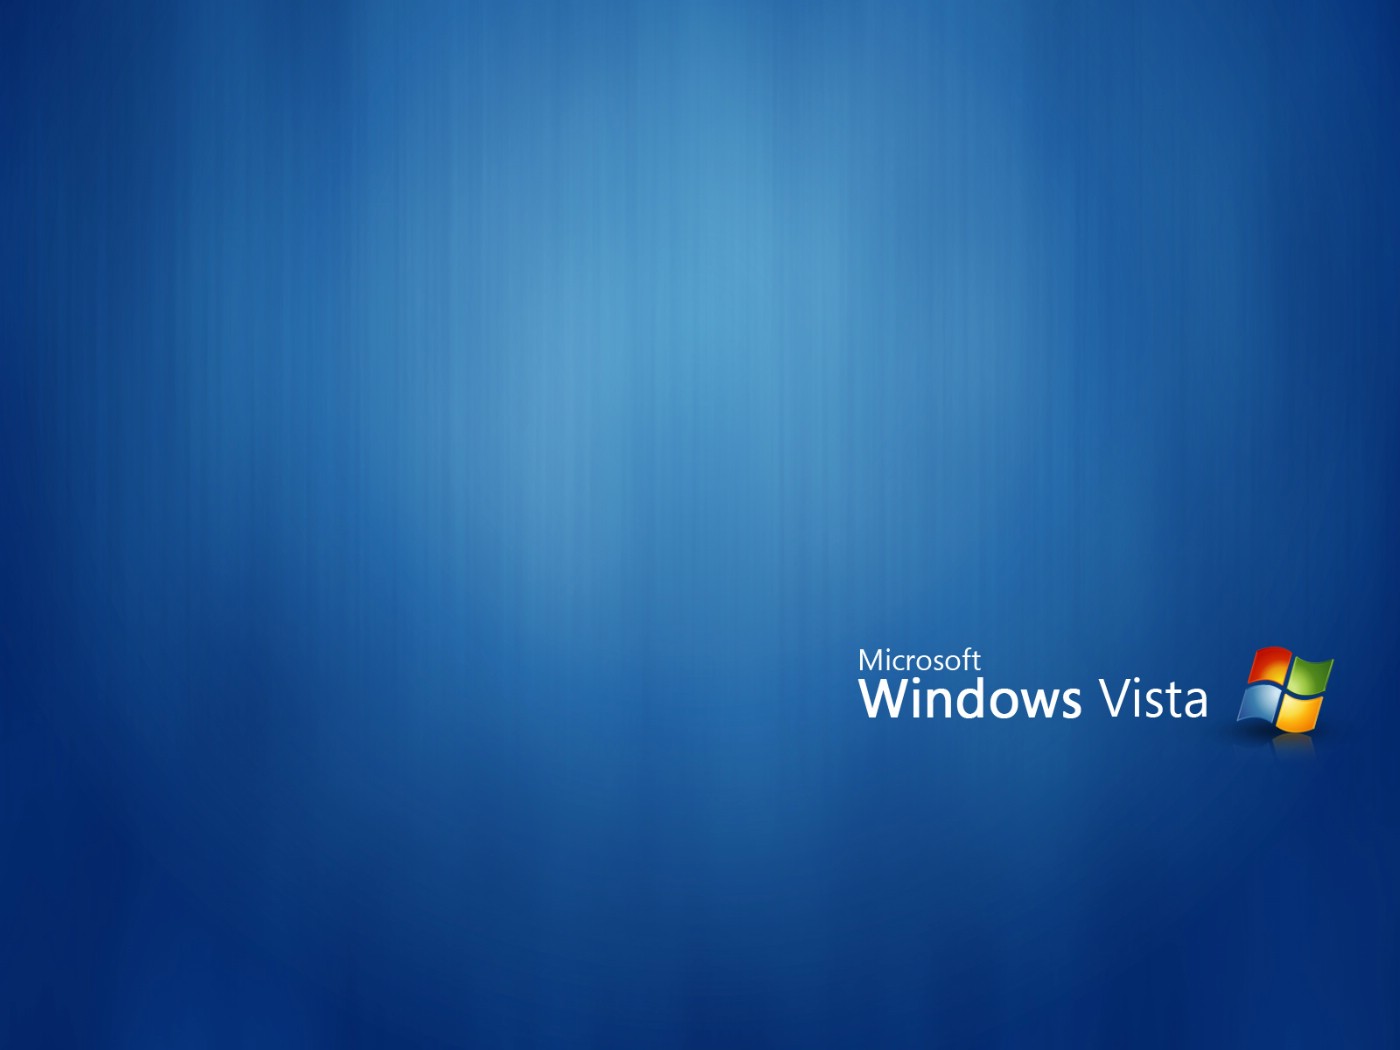 壁纸1400x1050Windows Vista超正壁纸集壁纸 Windows Vista超正壁纸集壁纸 Windows Vista超正壁纸集图片 Windows Vista超正壁纸集素材 其他壁纸 其他图库 其他图片素材桌面壁纸